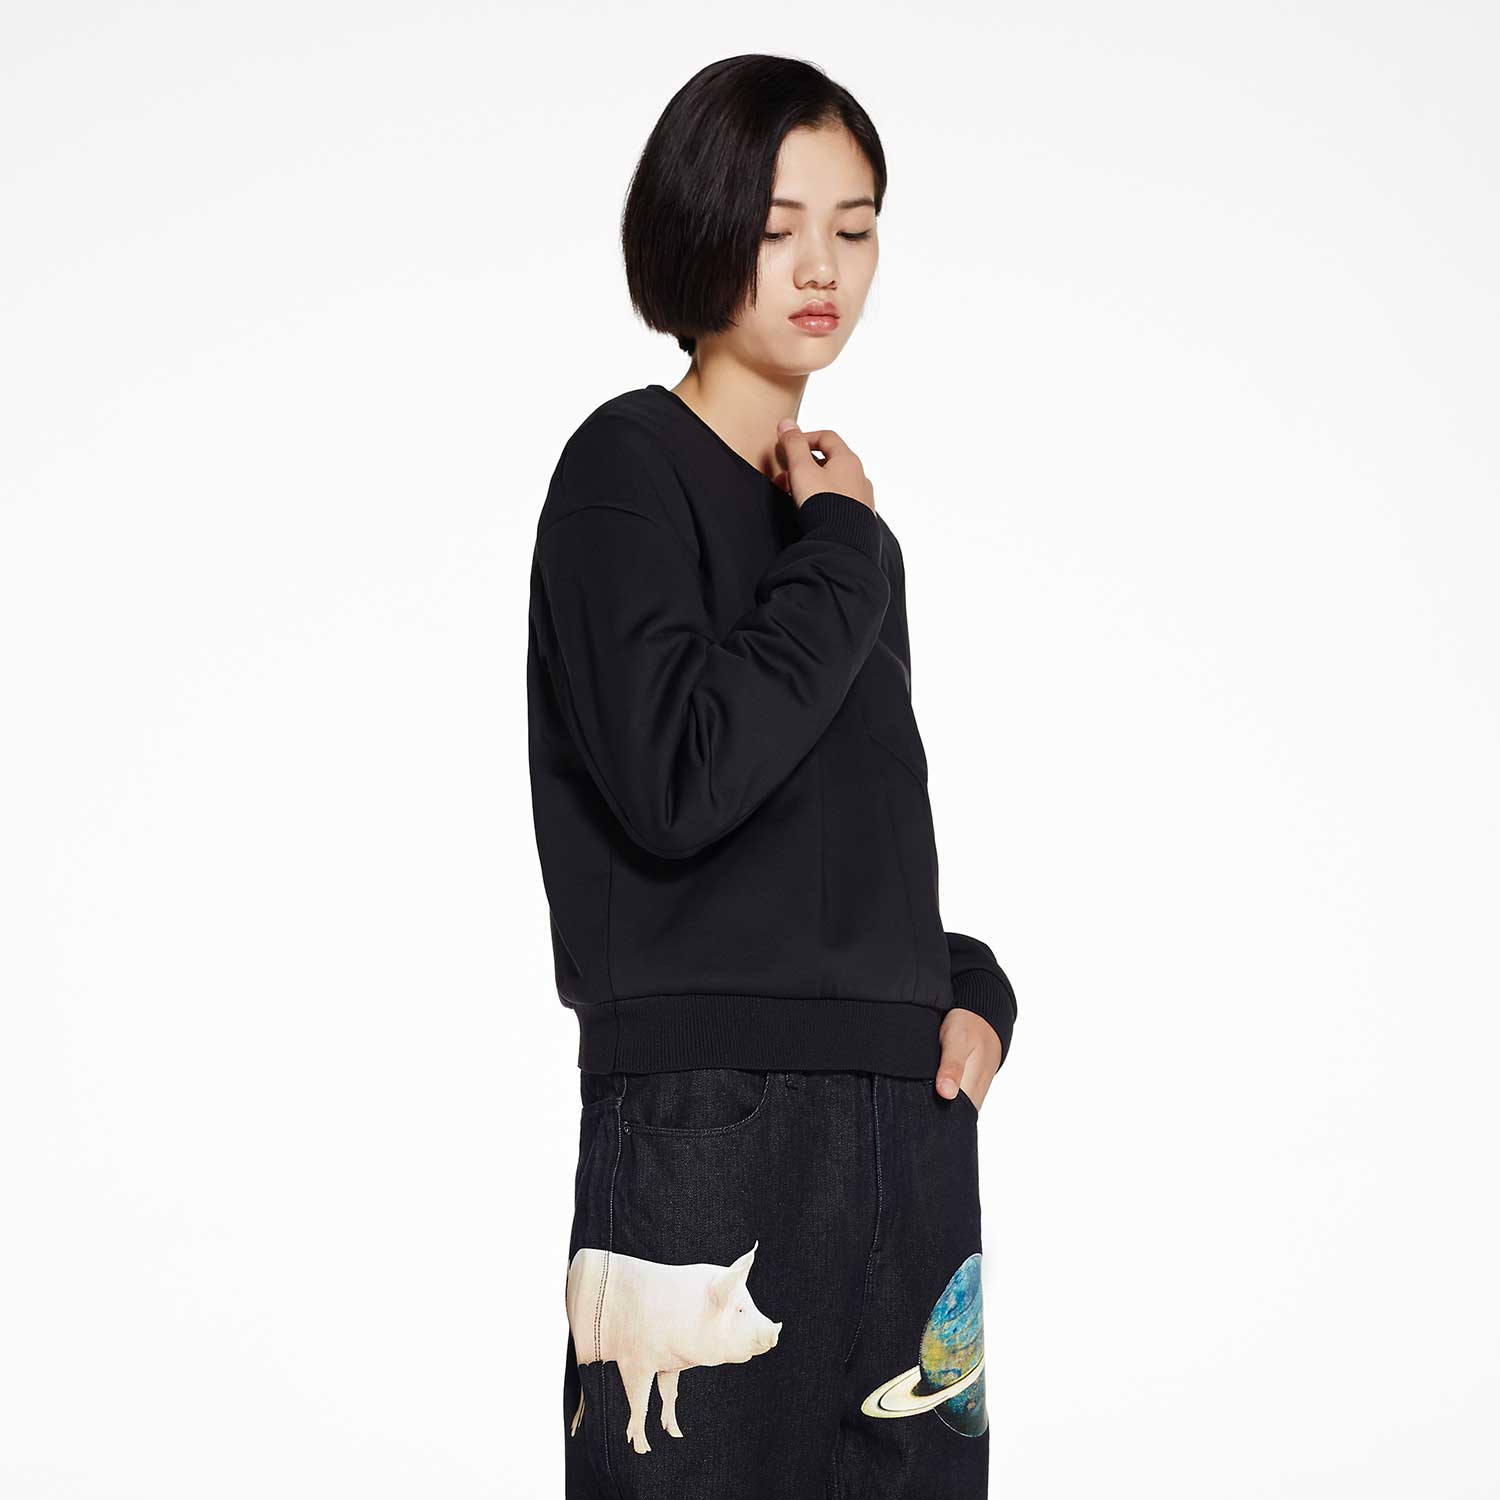 JNBY/江南布衣秋季新款时尚休闲女式长袖纯色短款棉衣5F990124产品展示图5